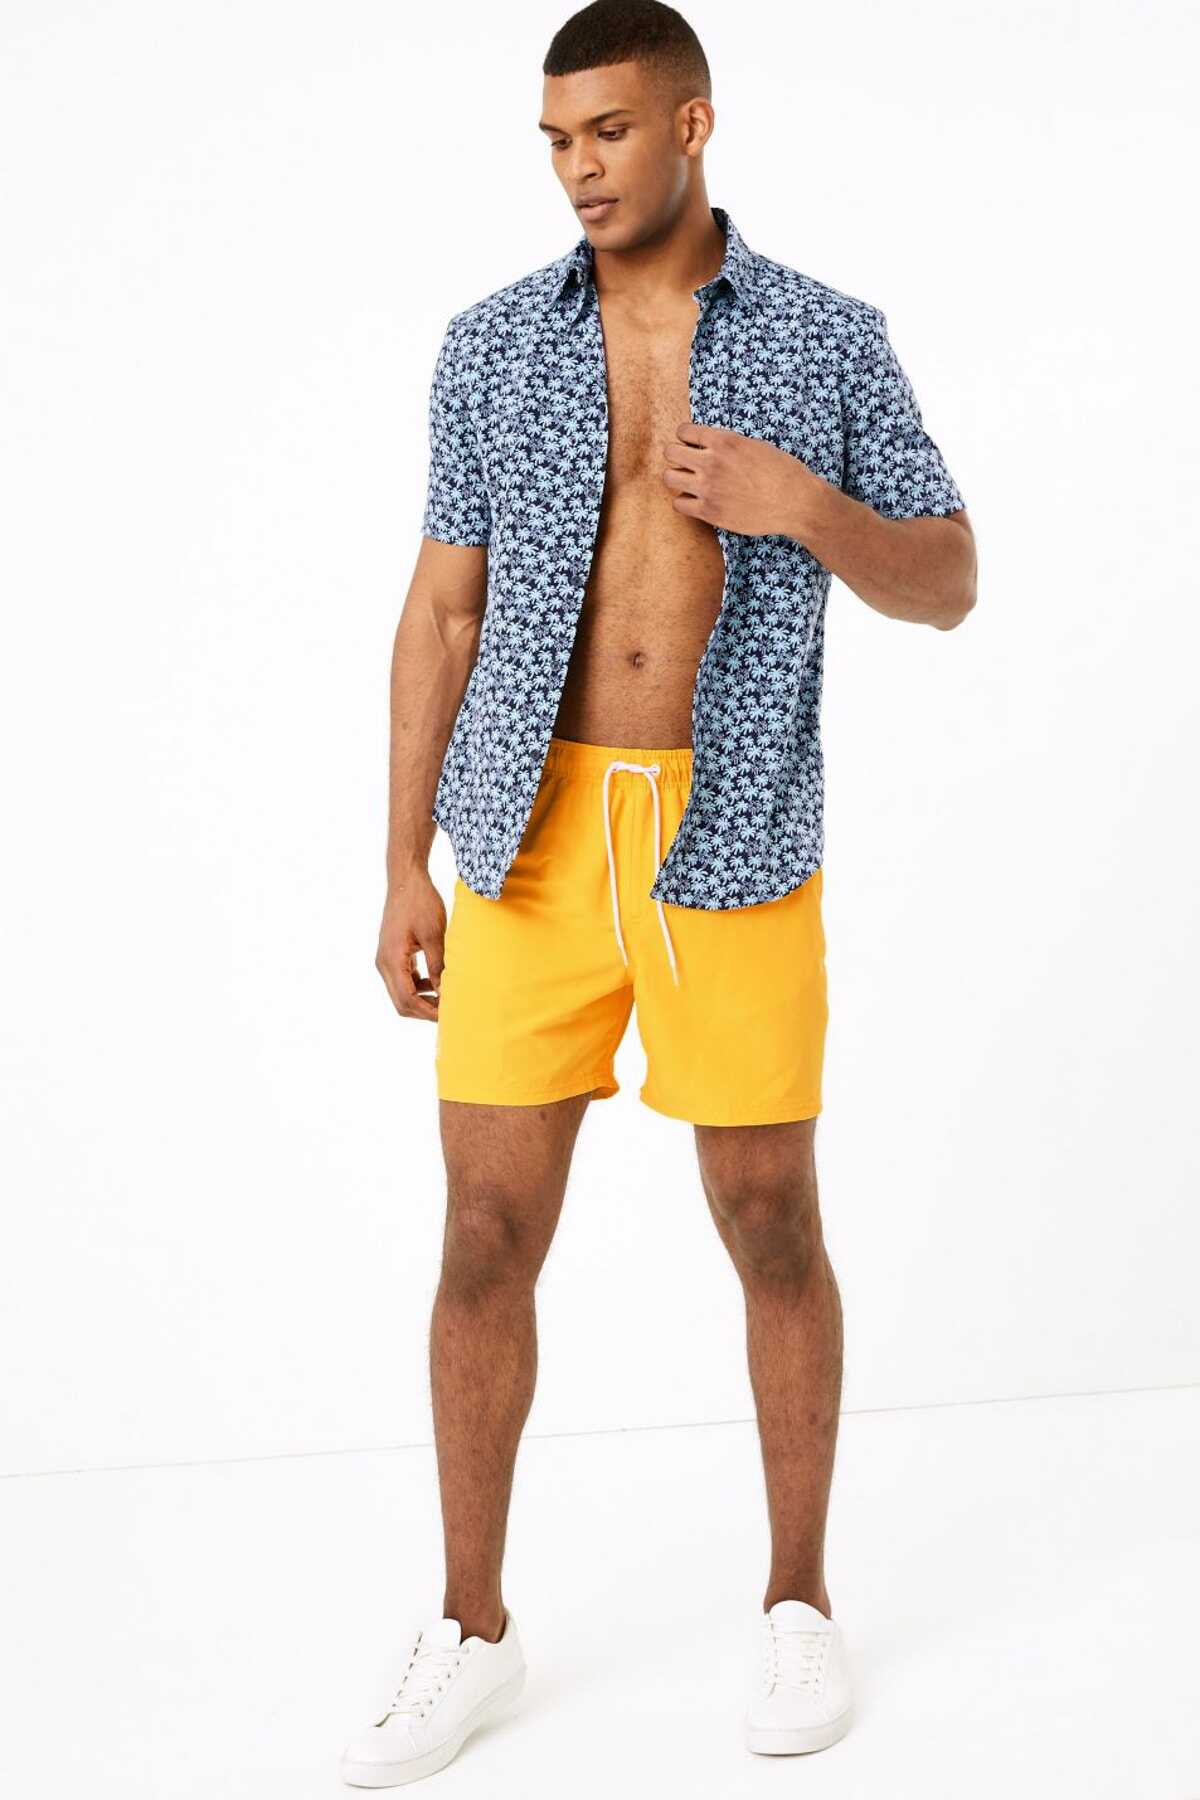 شورت شنا مردانه جیب دار ضد آب بندی زرد برند Marks & Spencer